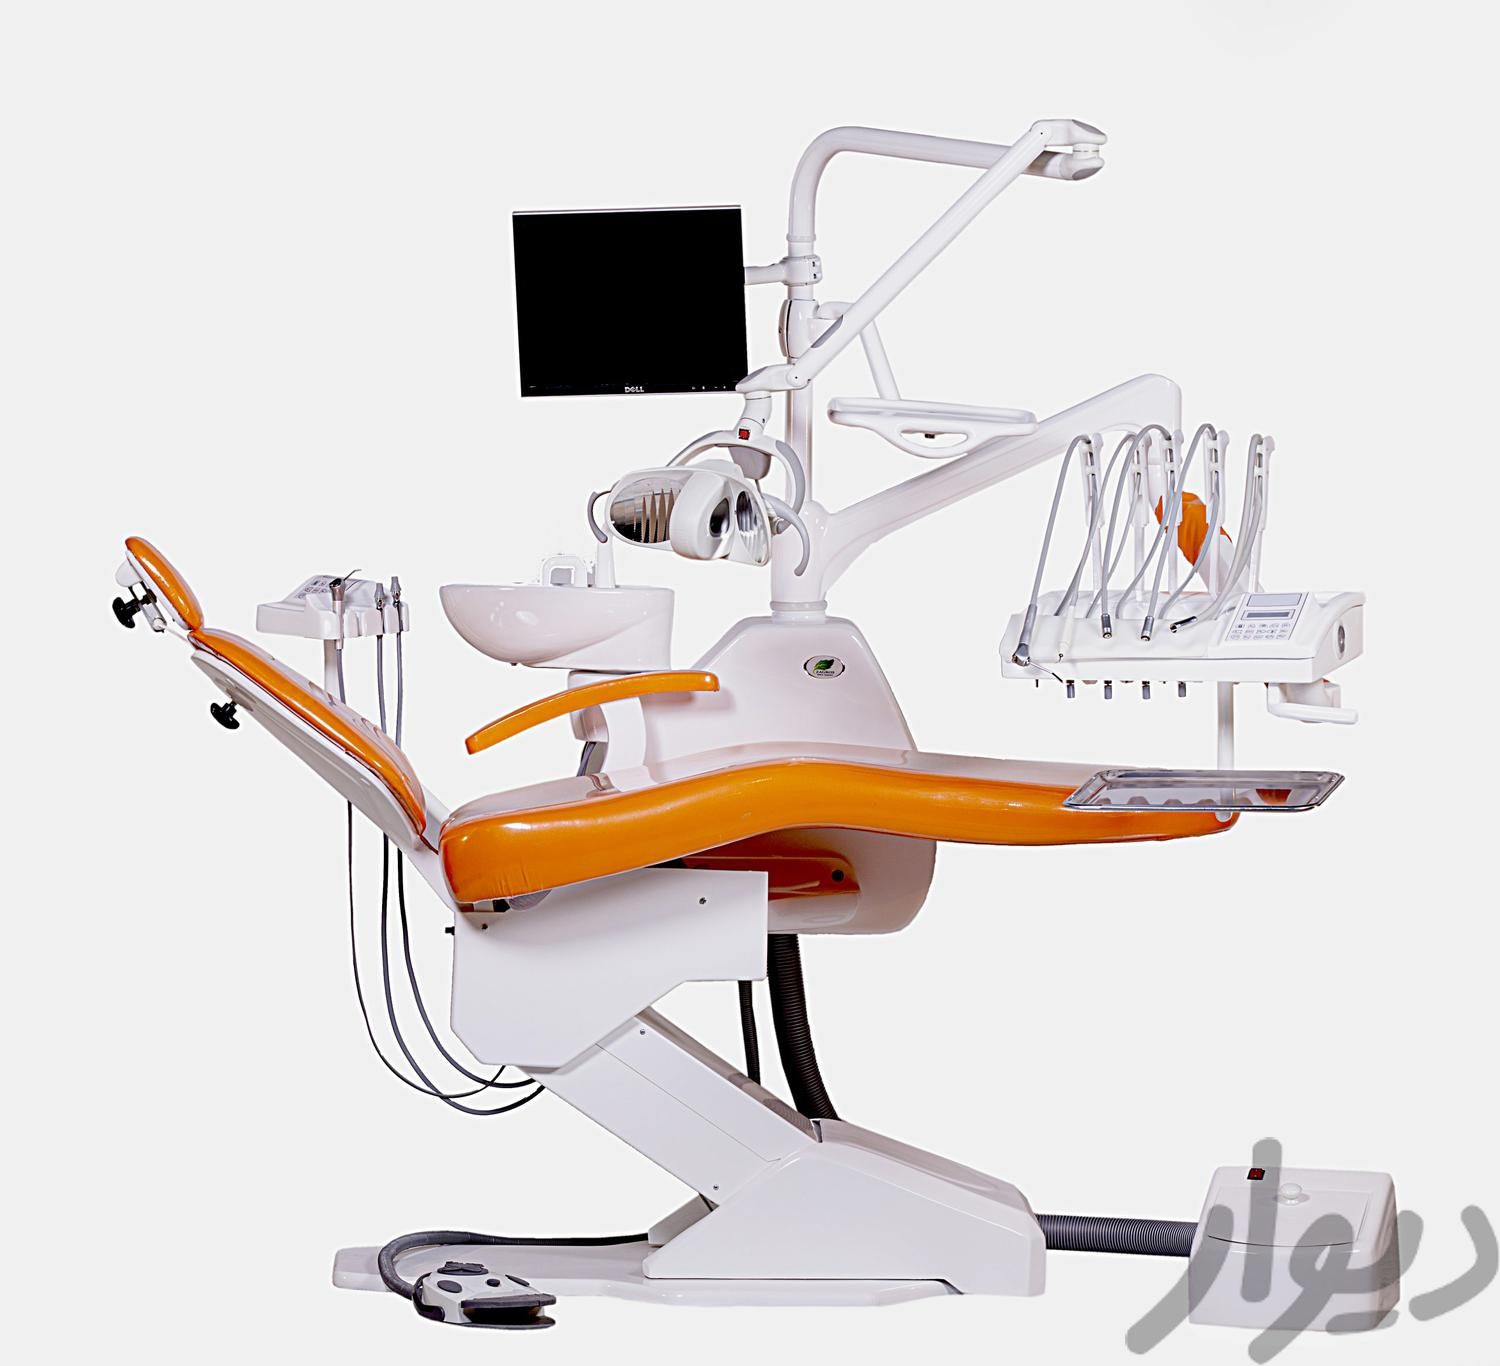 تعمیرات تجهیزات دندانپزشکی